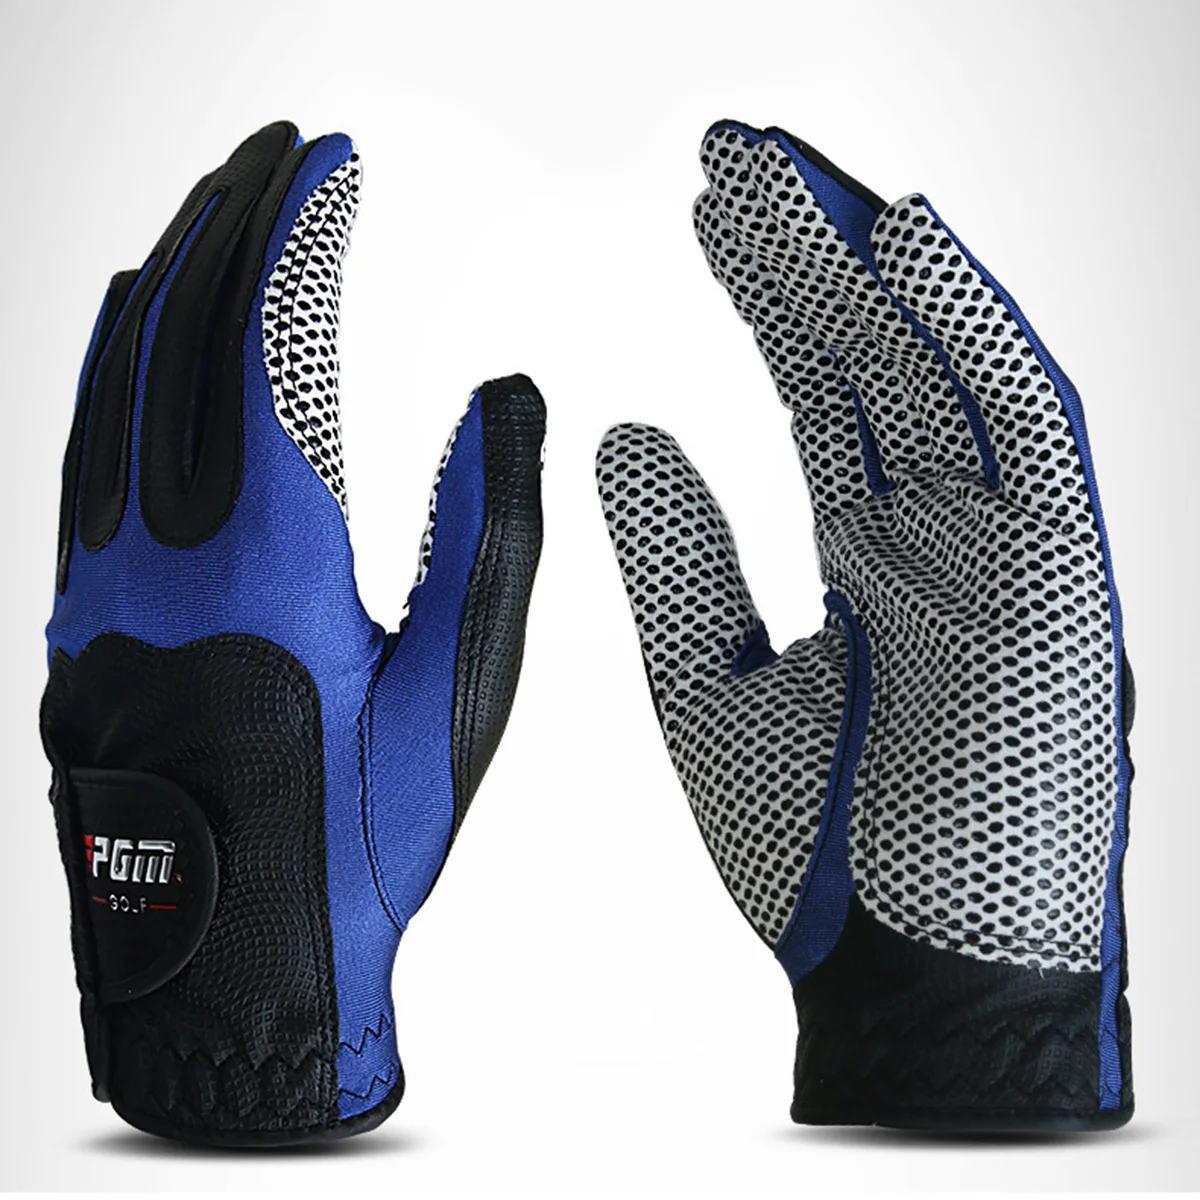 1 шт. перчатки для гольфа мужские для левой руки мягкие дышащие чистые с противоскользящими гранулами перчатки для гольфа для мужчин